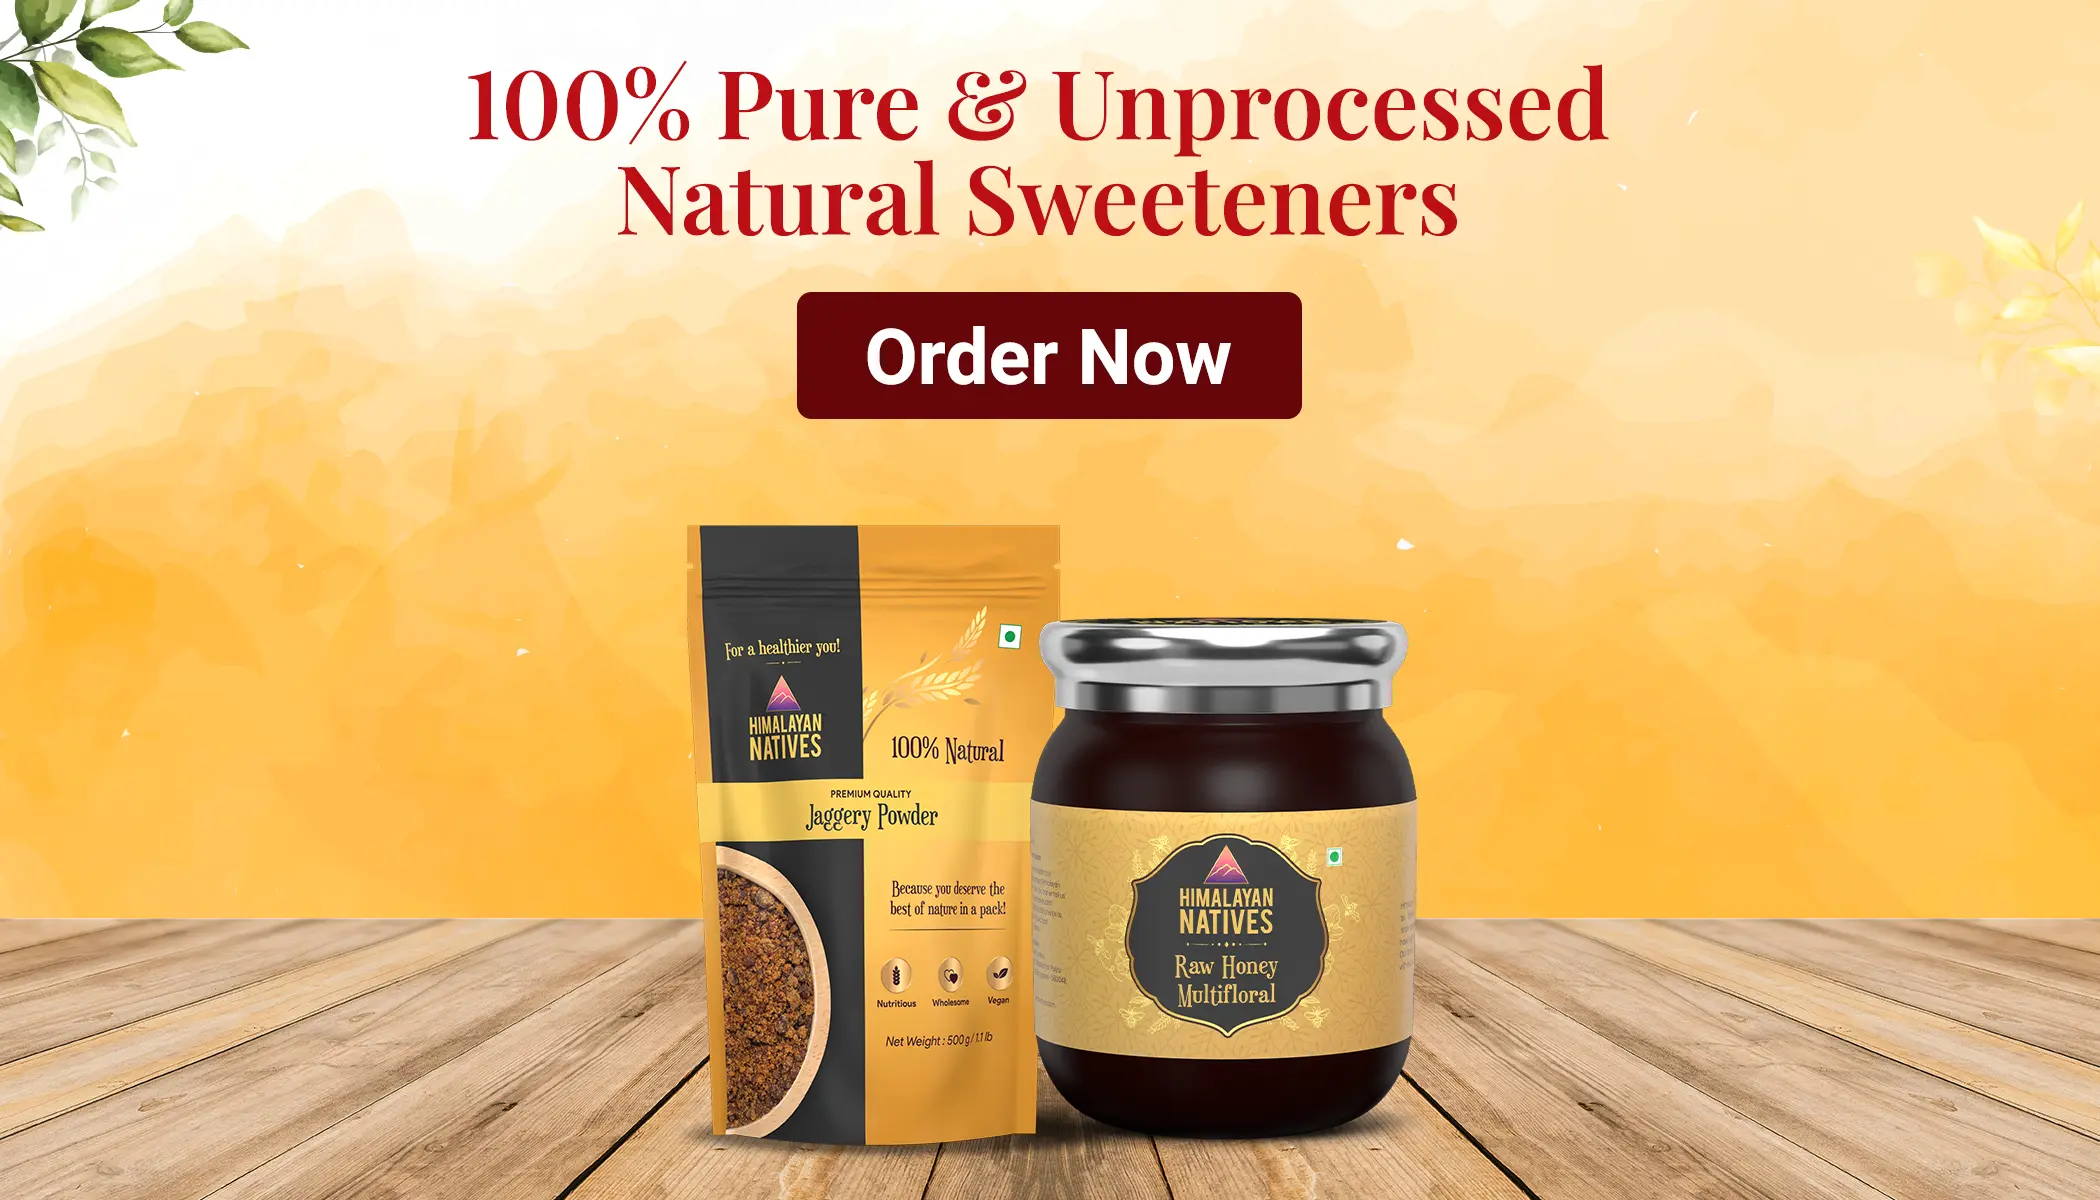 Natural Sweeteners